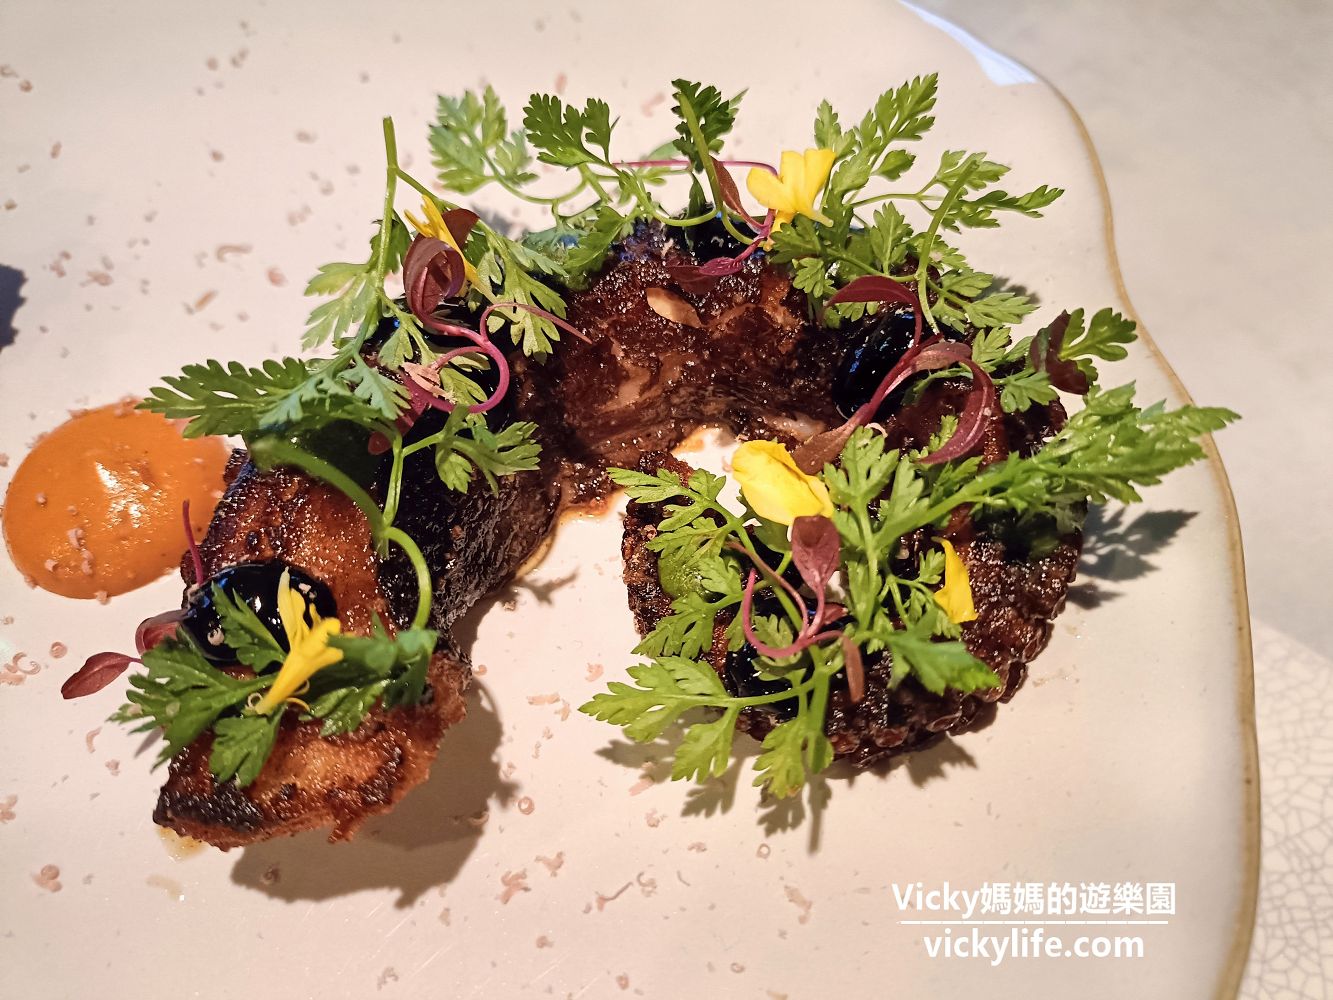 花蓮美食︱光復鄉 啄木鳥的家義式餐廳 WPCASA：花蓮觀光糖廠裡的美味義式料理